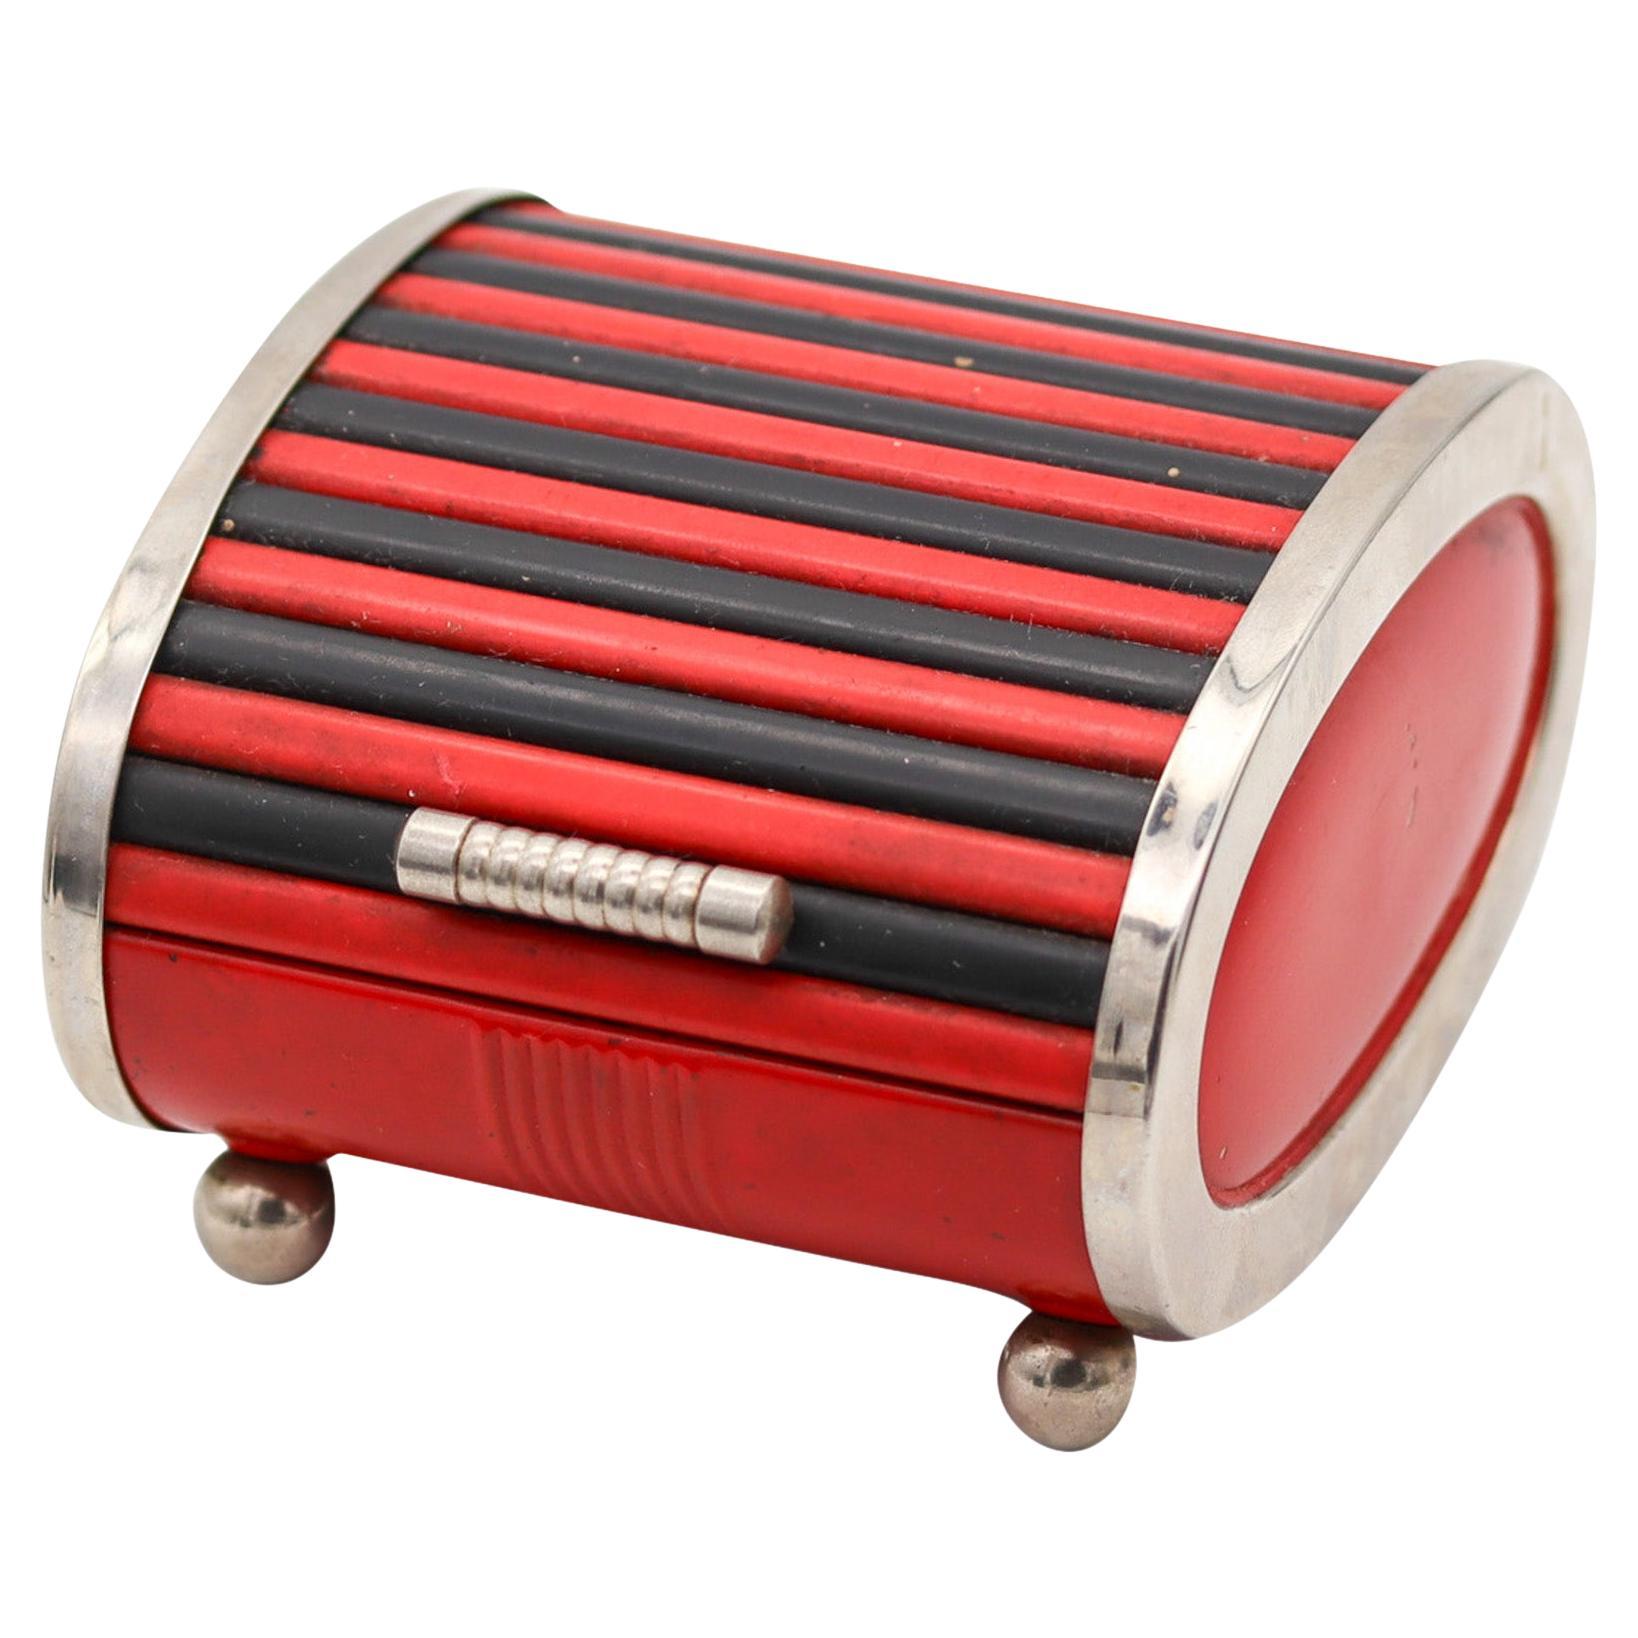 Park Sherman 1930 Art Deco Chromed Steel Roller Box With Red And Black Bakelite